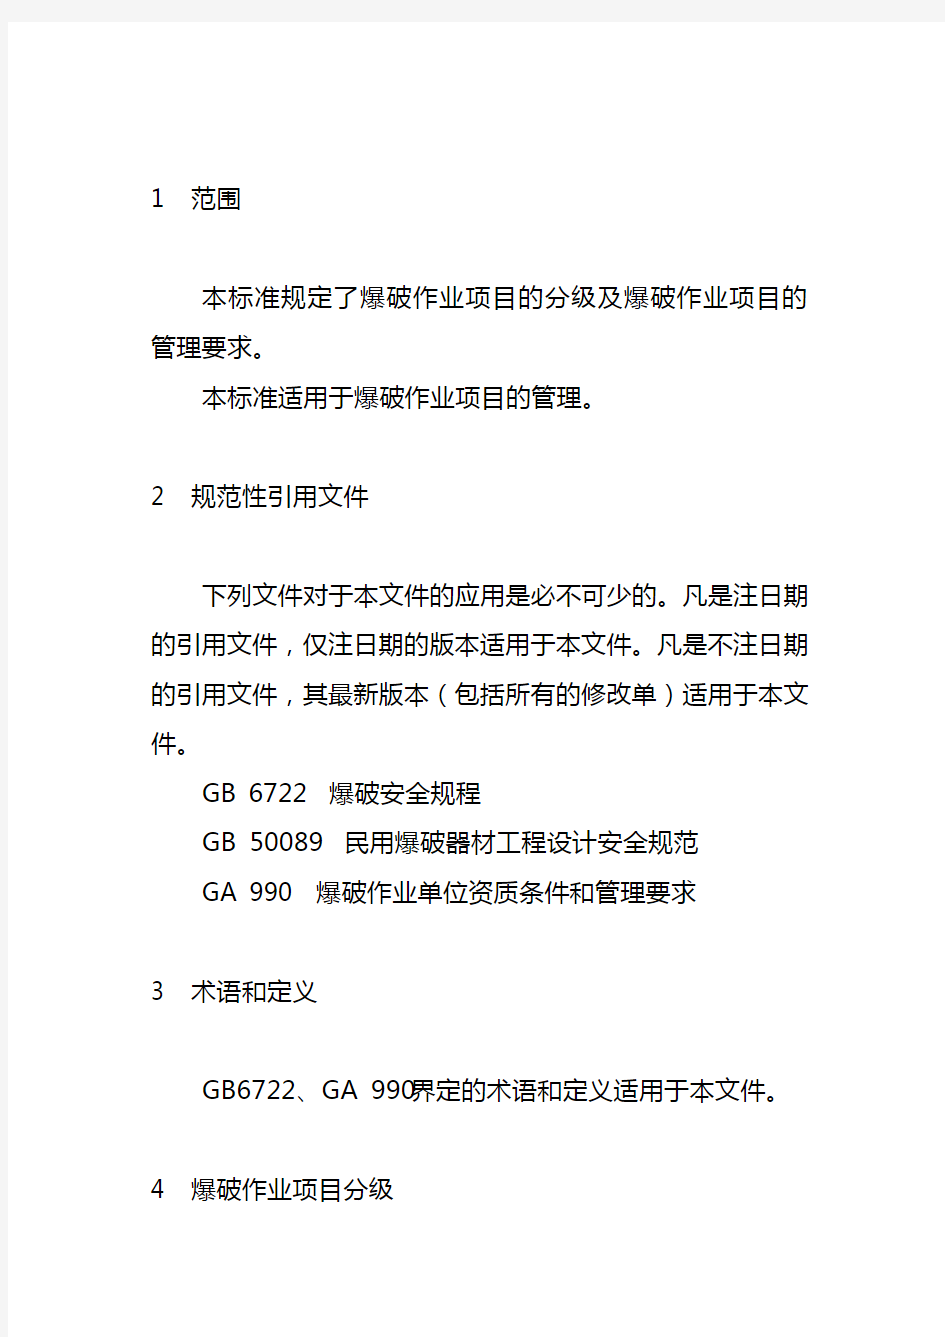 爆破作业项目管理要求中华人民共和国公共安全行业标准GA991